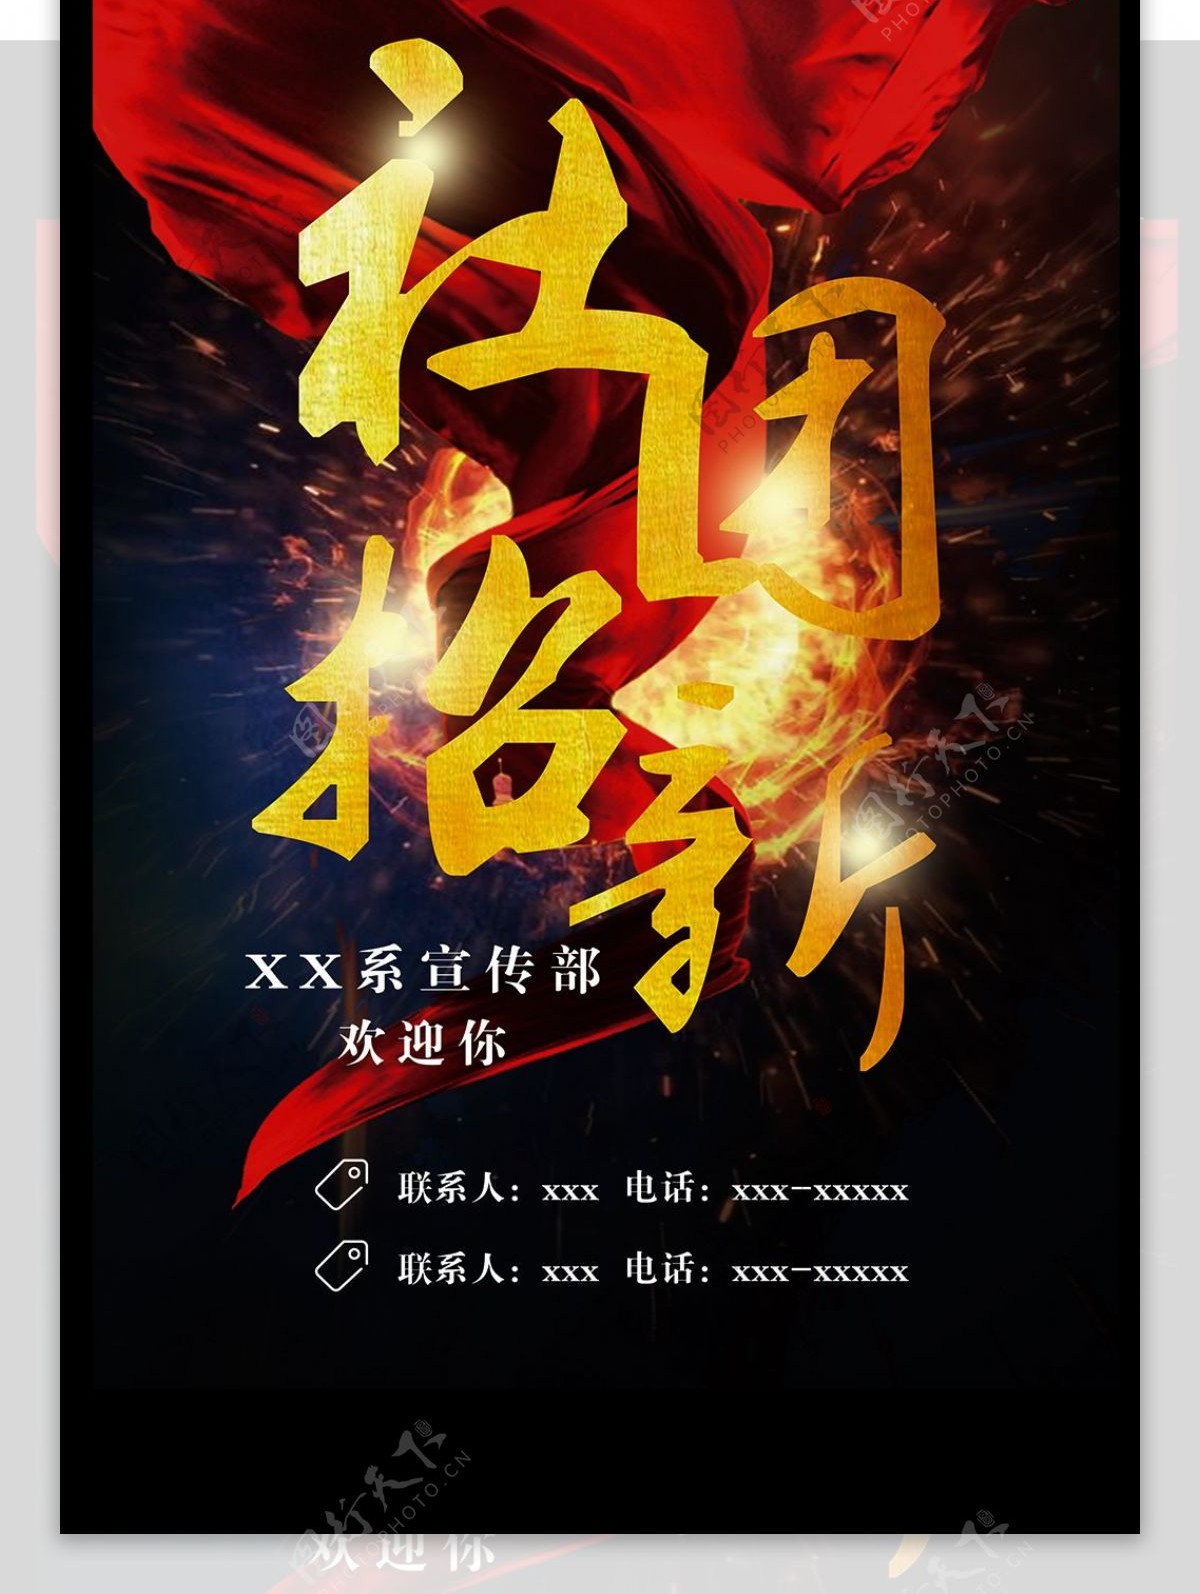 社团招新开学季宣传单红旗炫酷蓝黑色海报